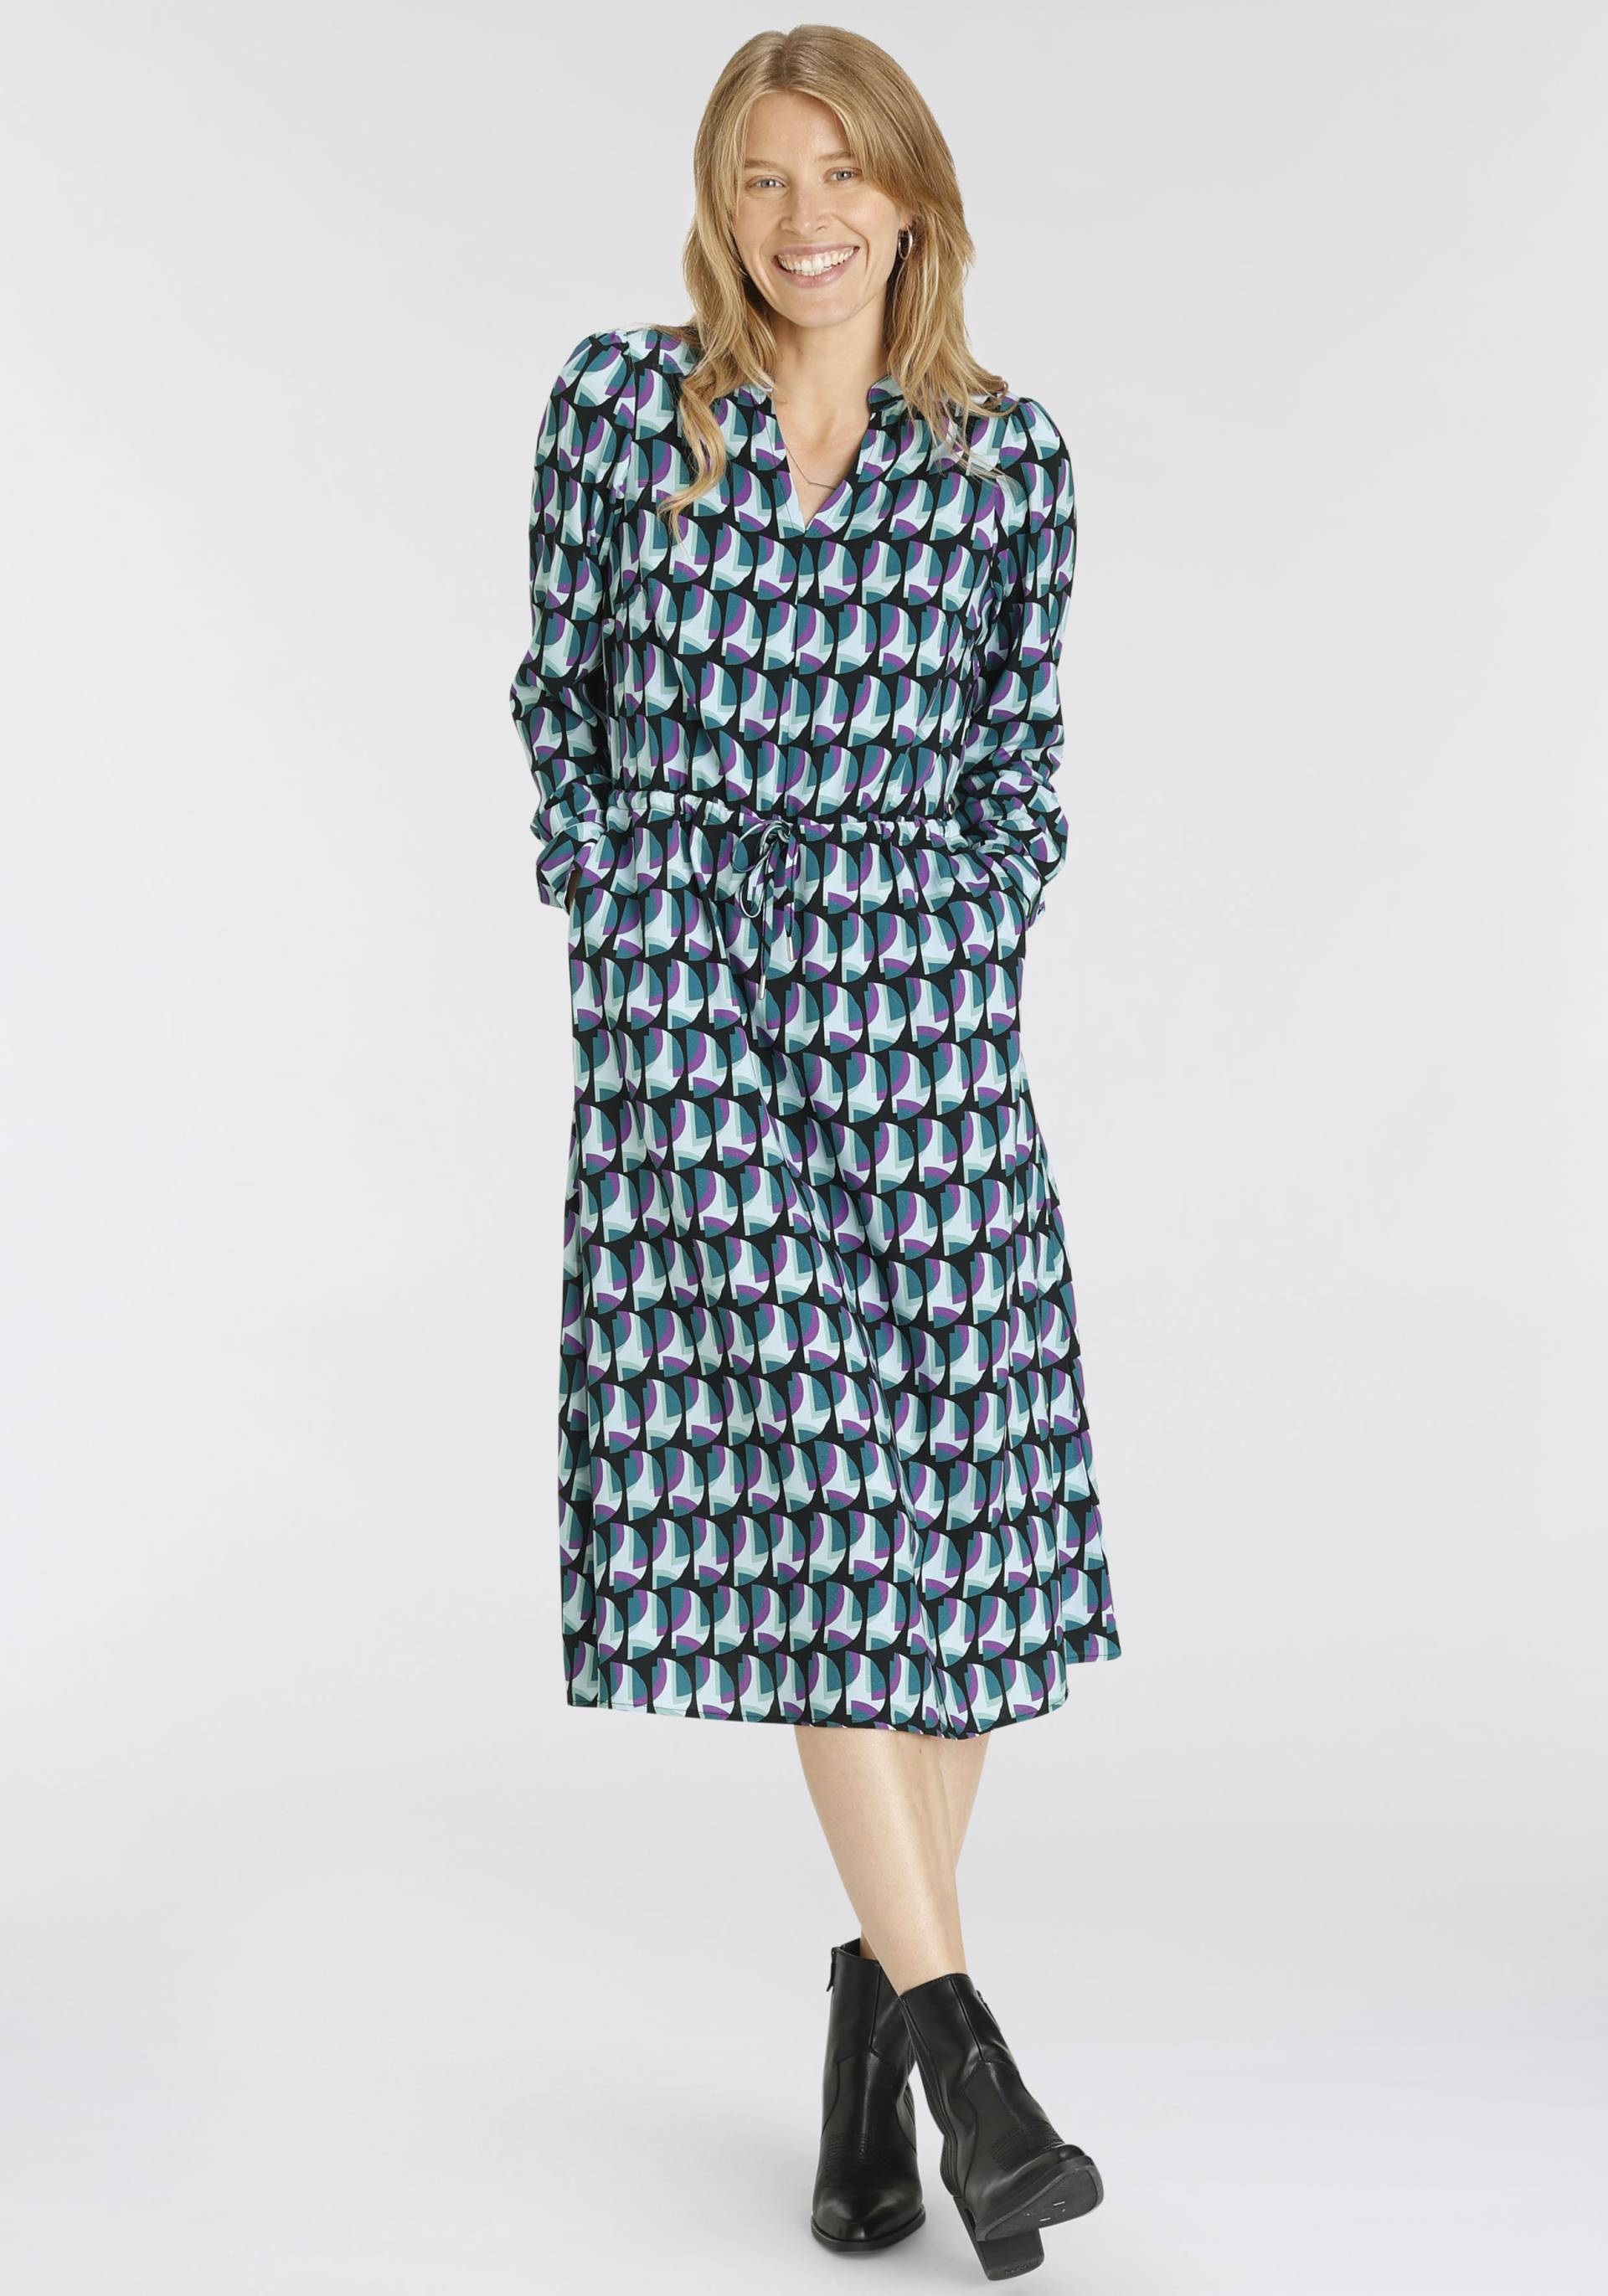 HECHTER PARIS Hemdblusenkleid, mit elegantem Allover-Print von HECHTER PARIS